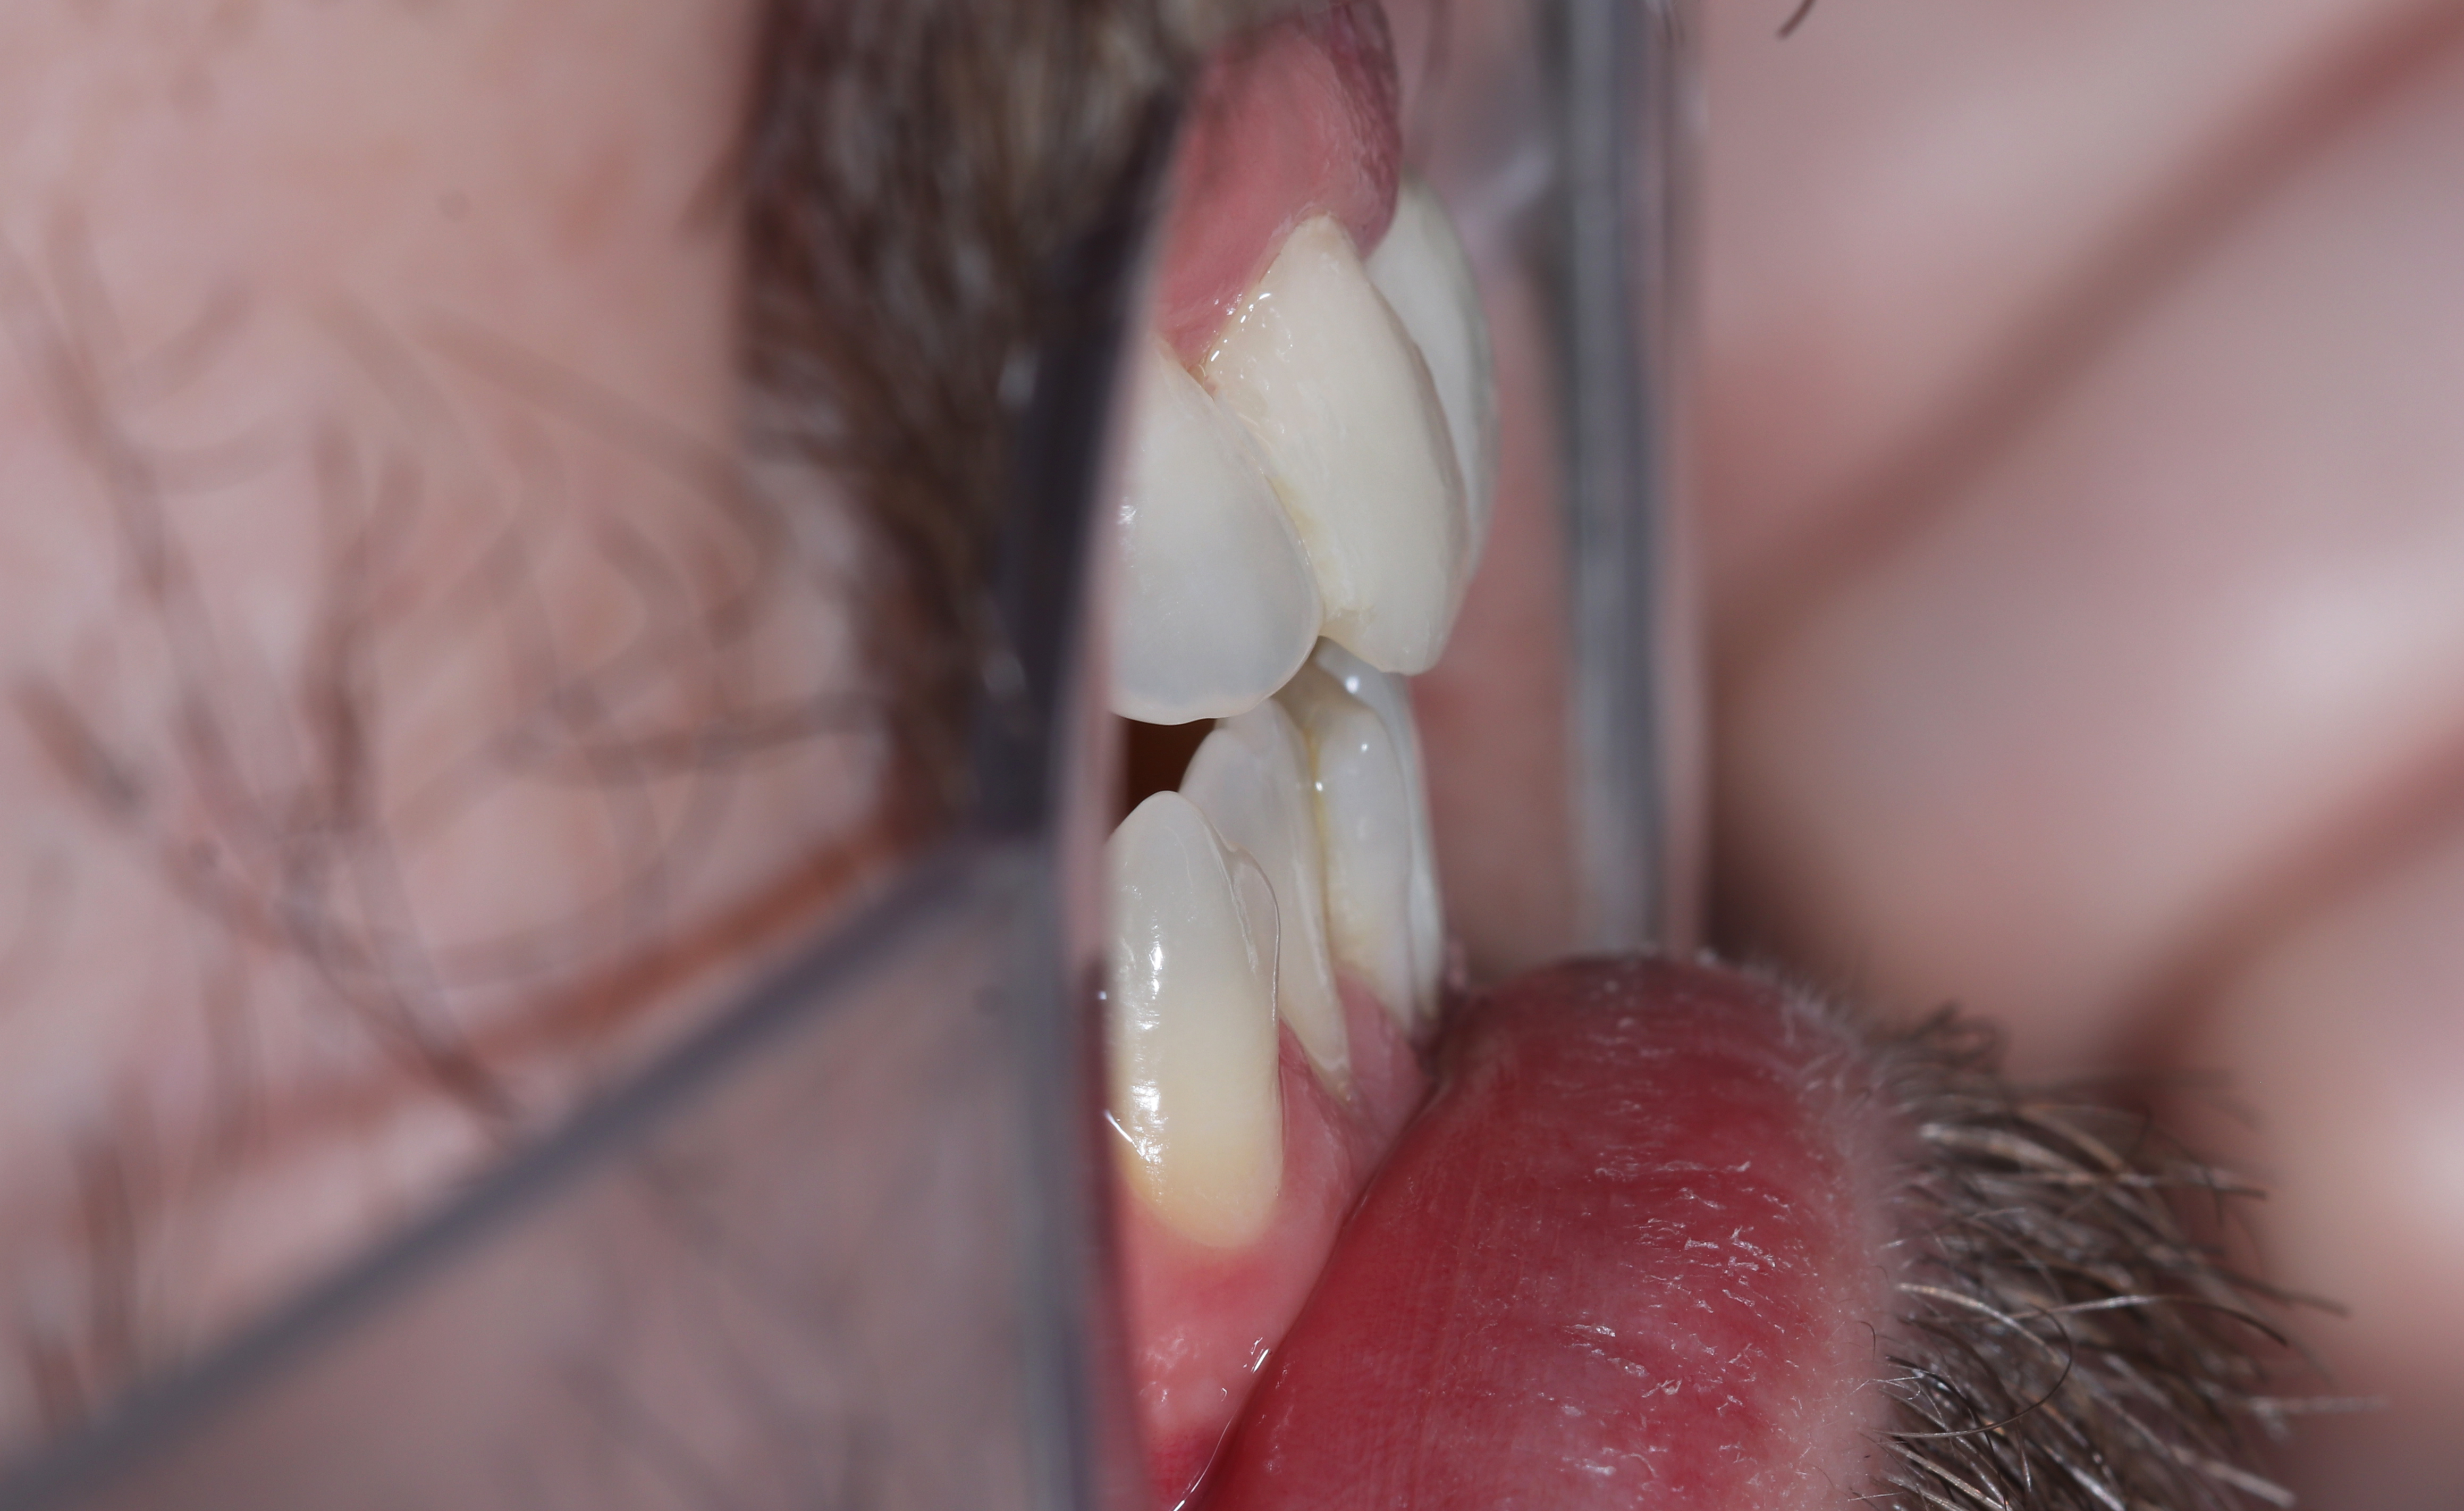 Οι προσωρινές αποκαταστάσεις τοποθετημένες στο στόμα μετά την παρασκευή των δοντιών - Προφίλ